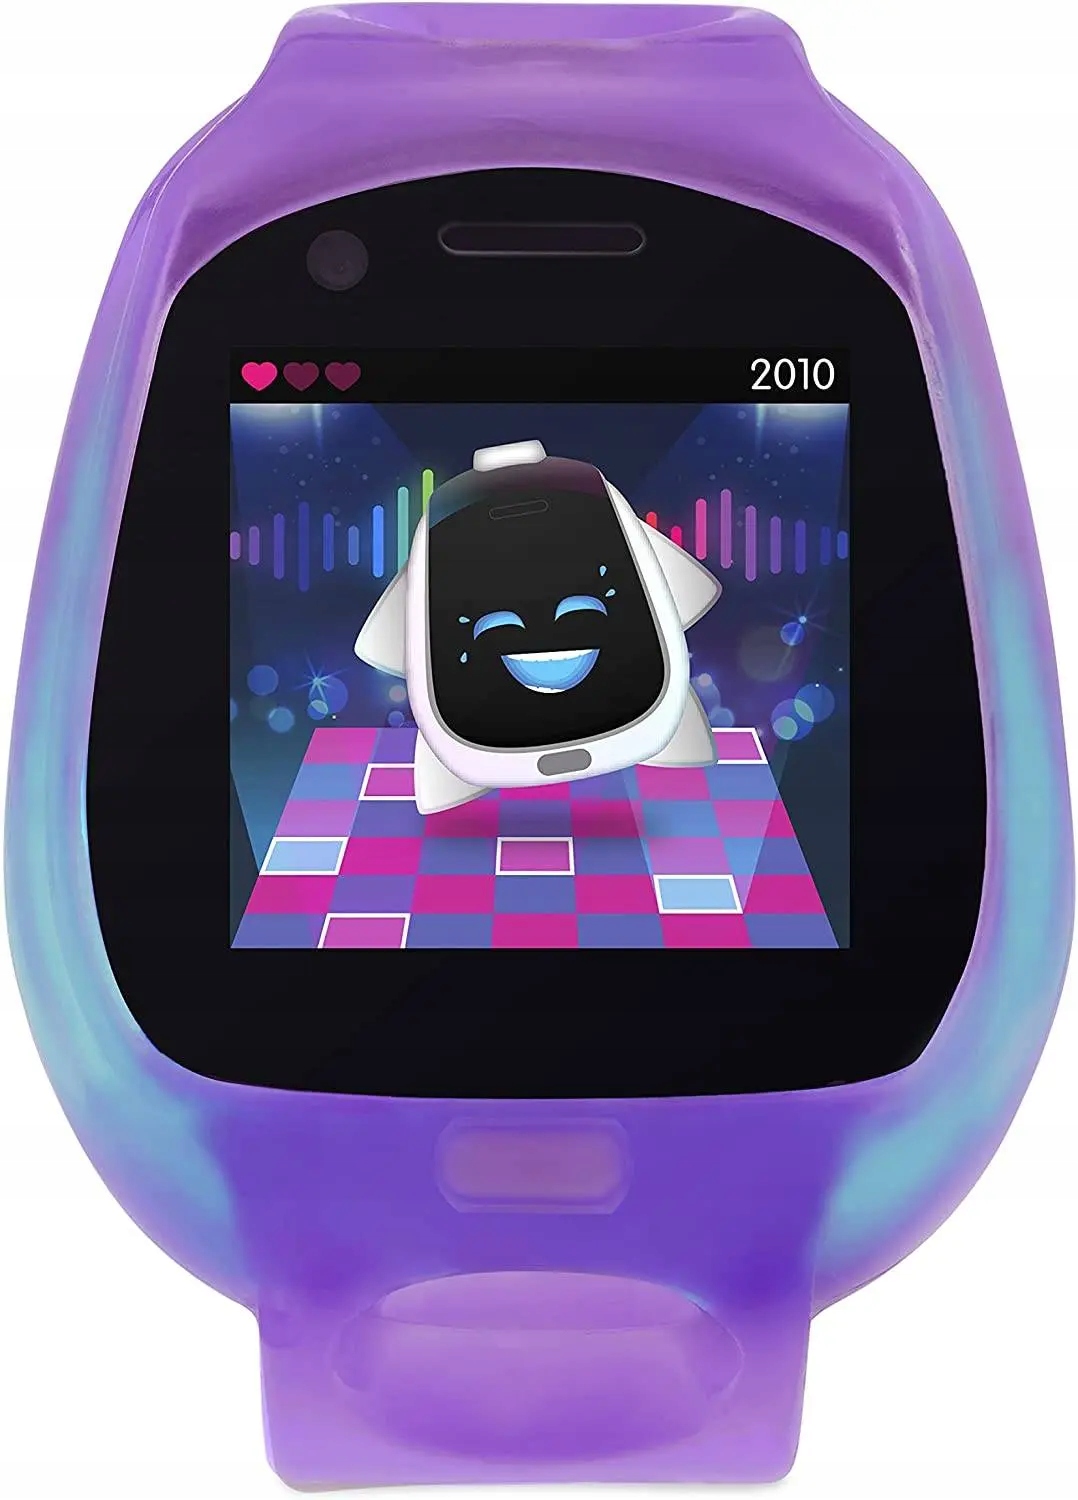 Tobi 2 SmartWatch Watch Purple 659140 ROBOT Bērna vecums no 6 gadiem +